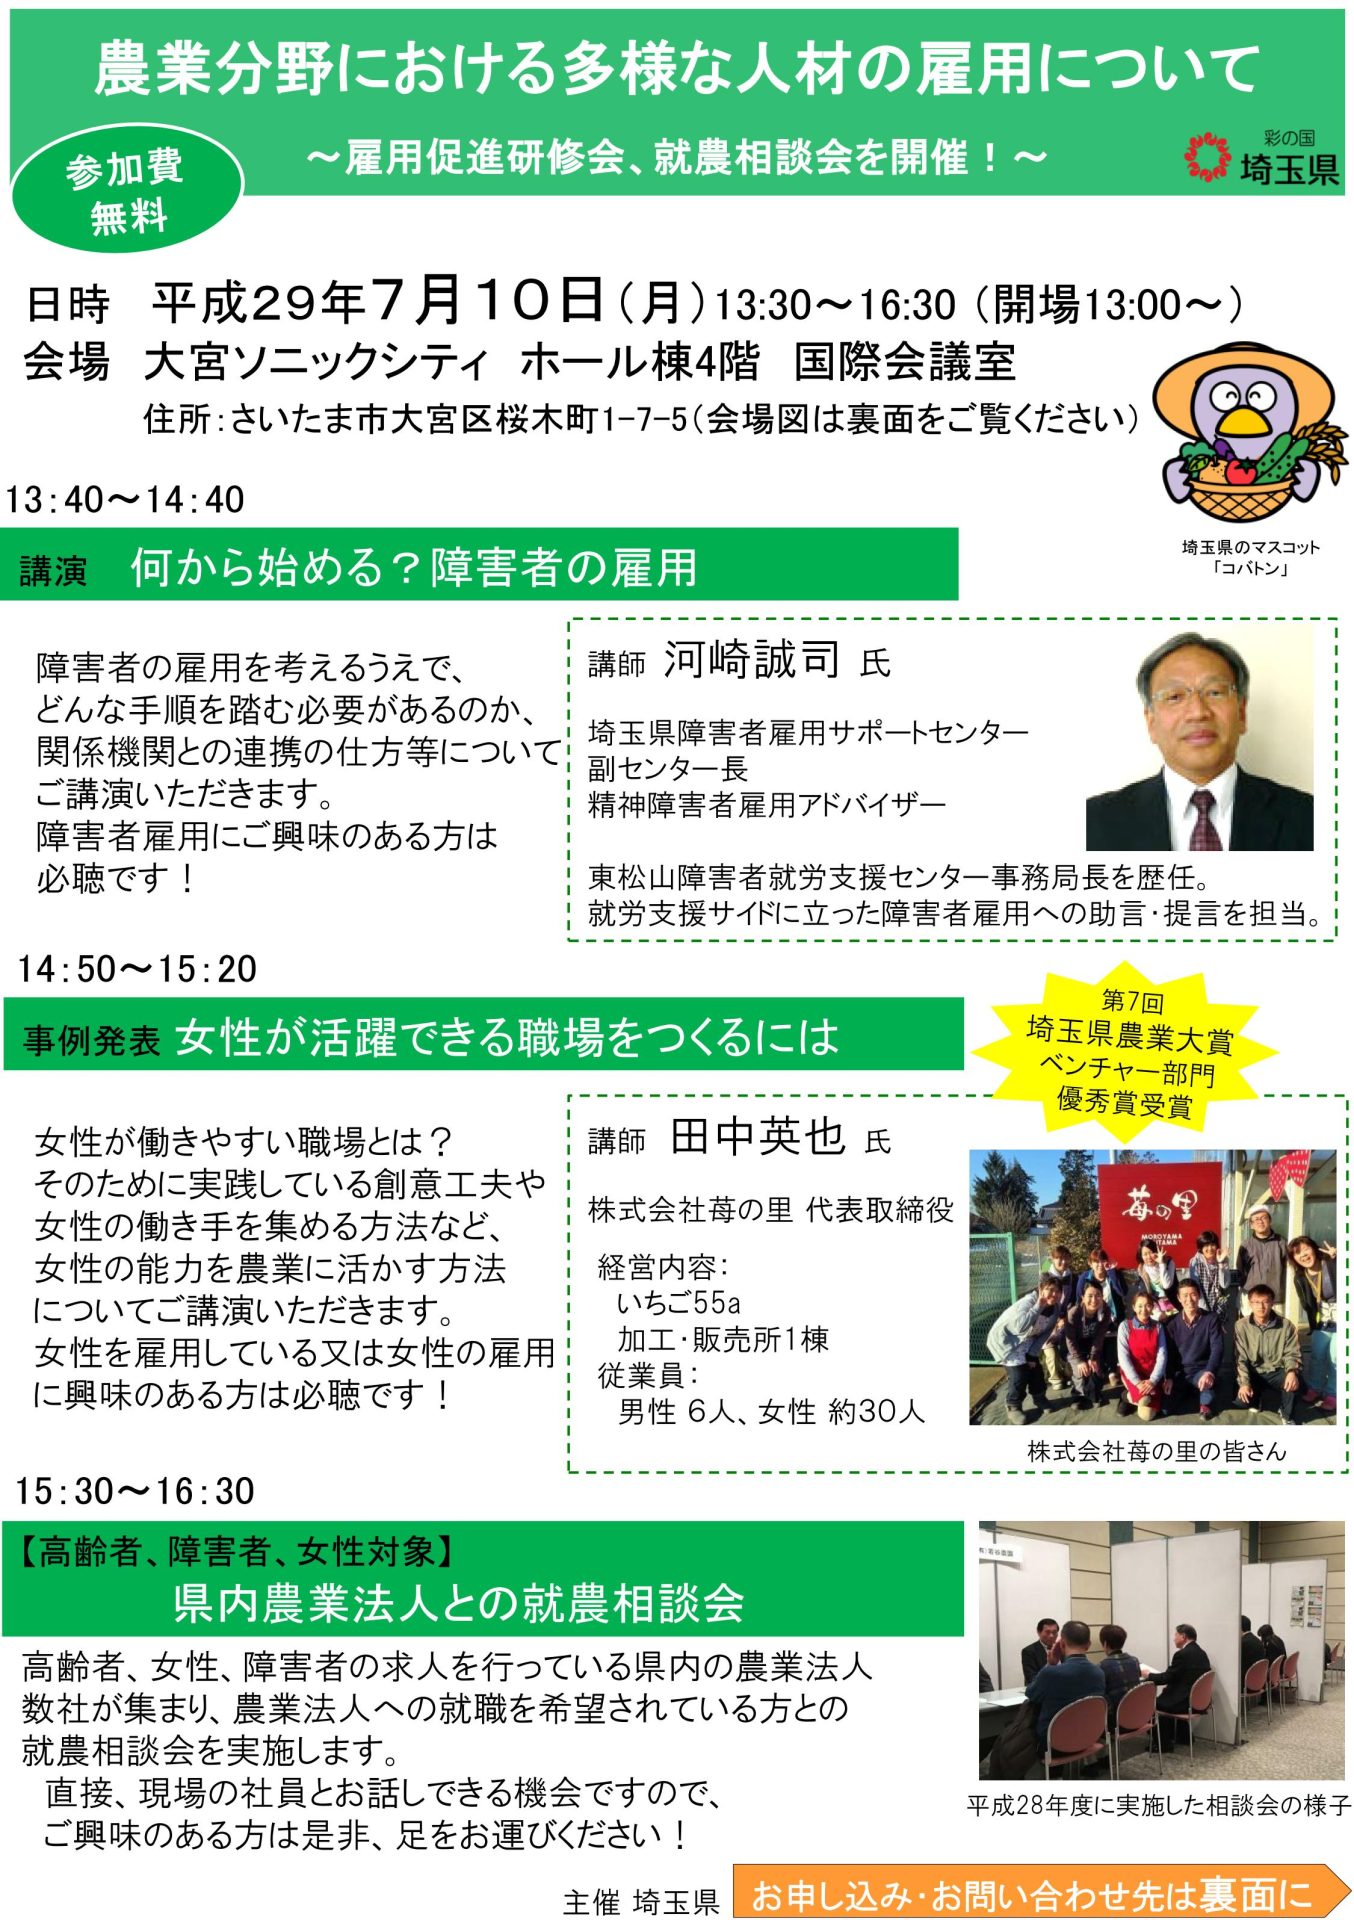 【埼玉県】雇用促進研修会、就農相談会を開催します！ | 移住関連イベント情報